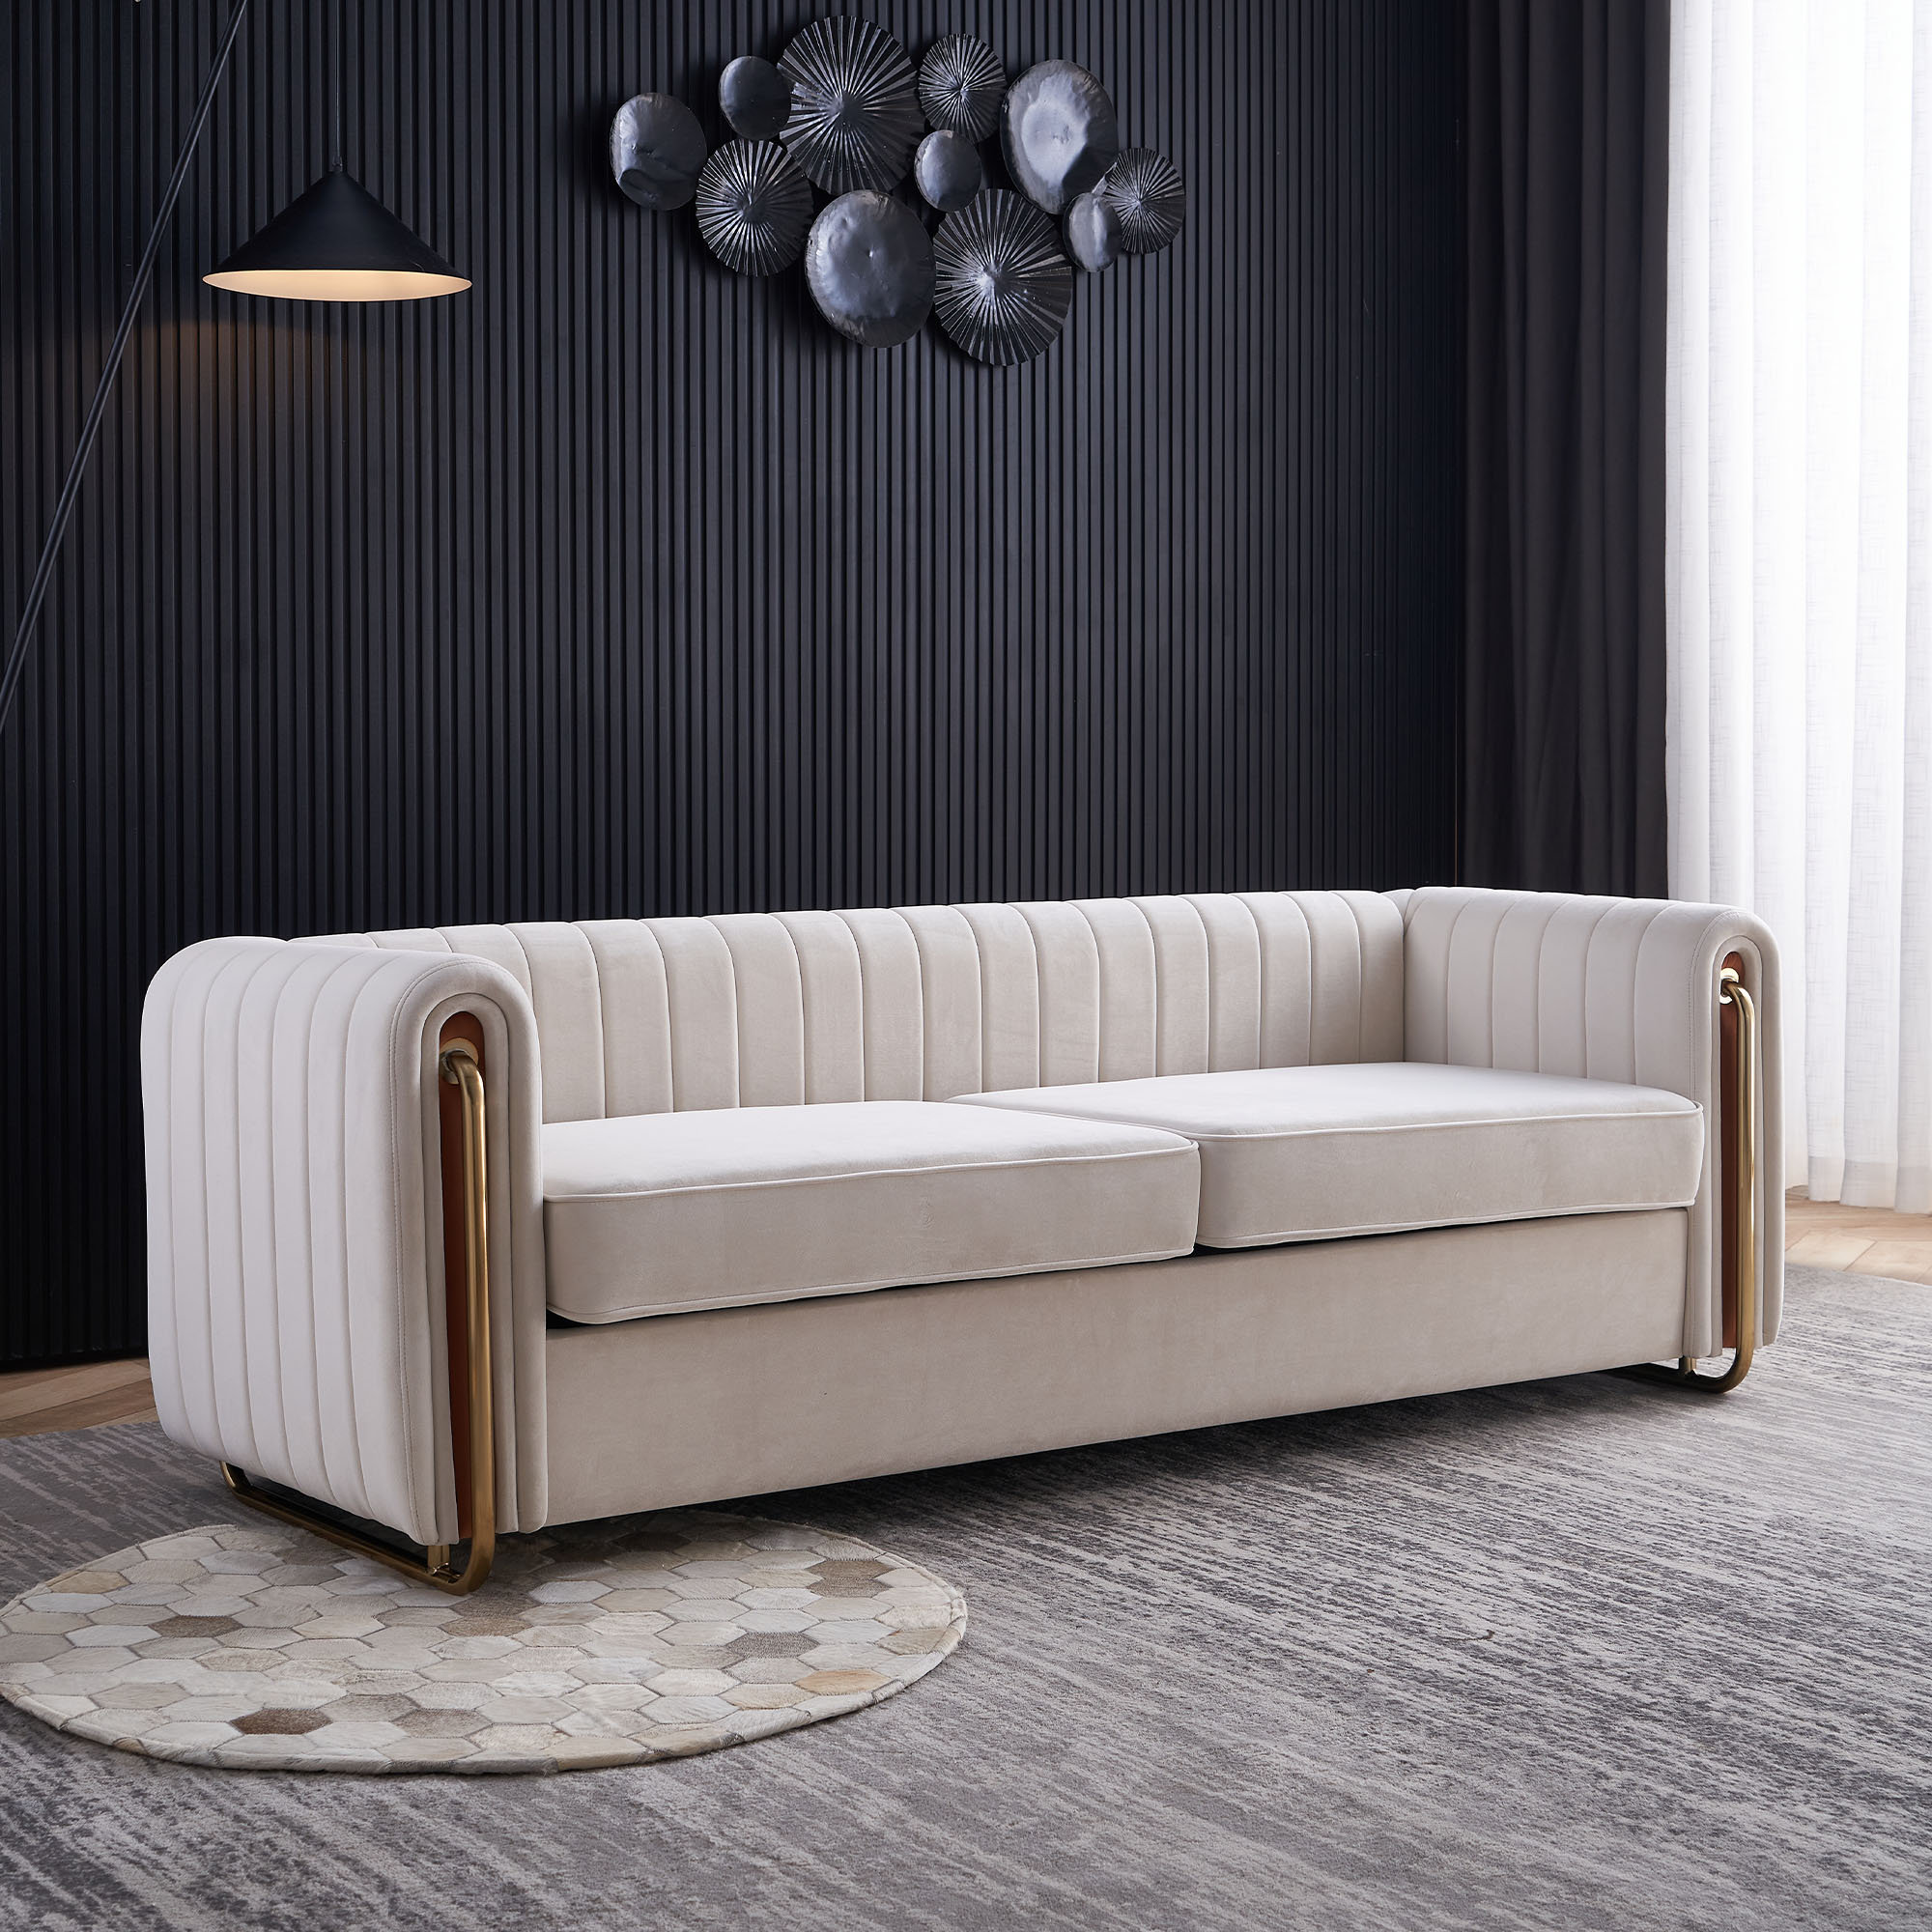 Black Velvet Upholstered Sofa Channel Tufted 3-Seater Sofa